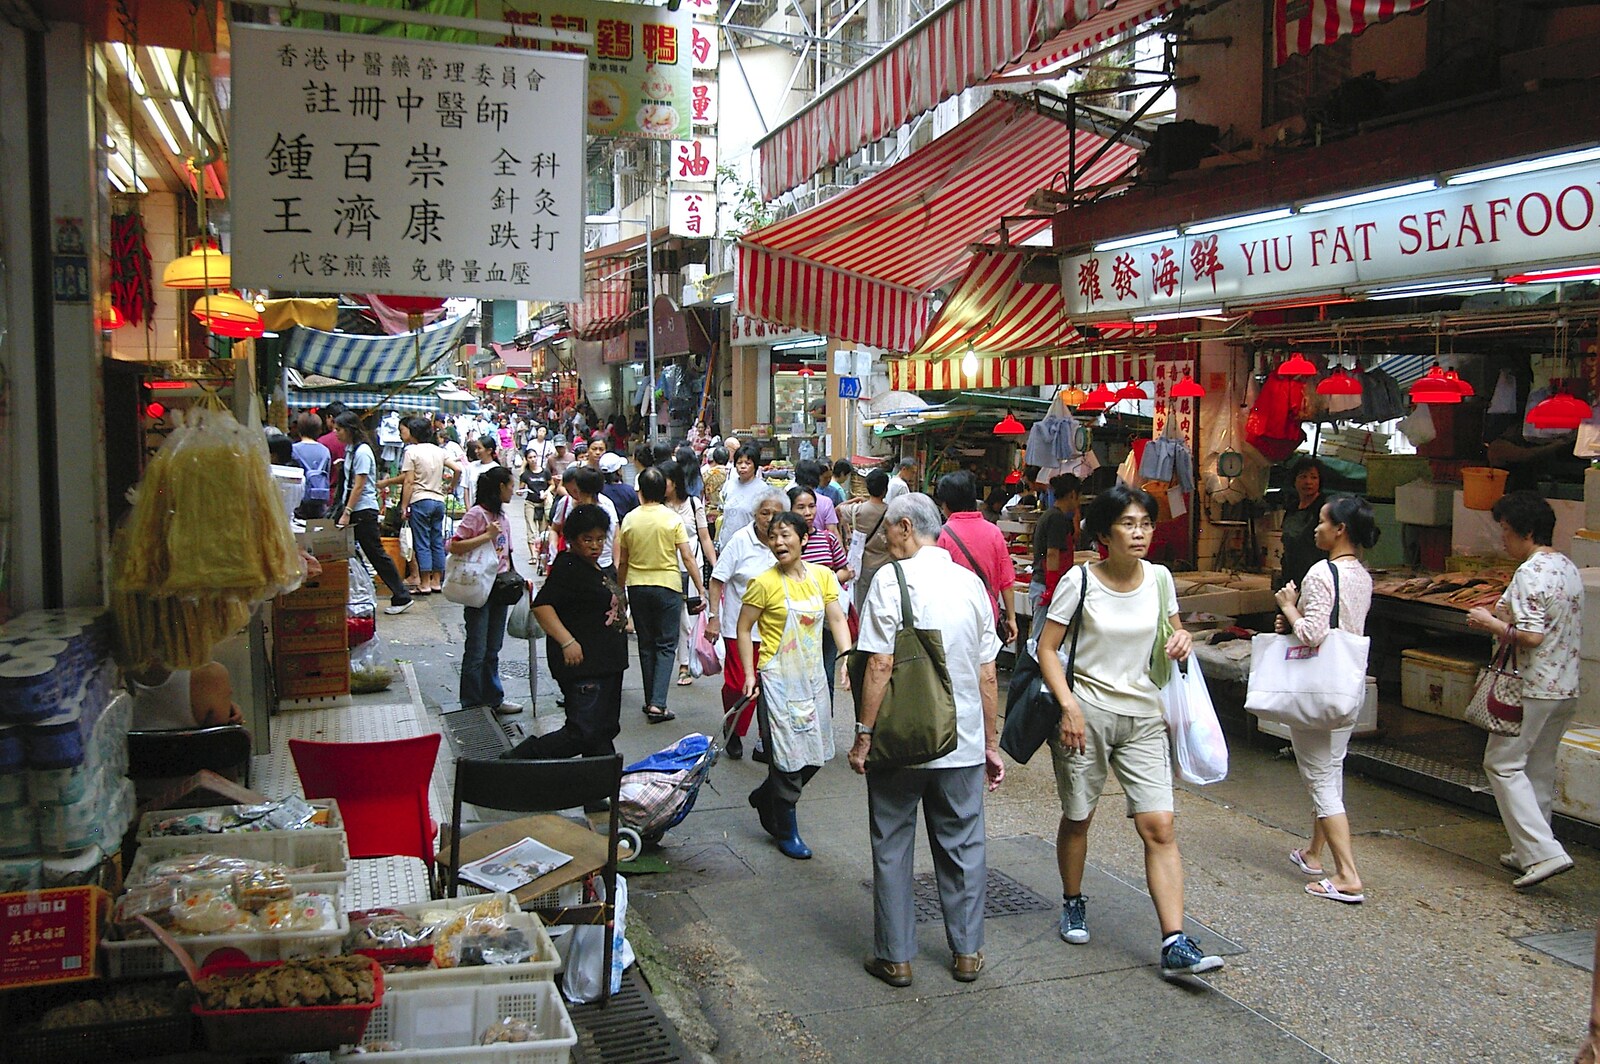 More people from Lan Kwai Fong Market, Hong Kong, China - 4th October 2006